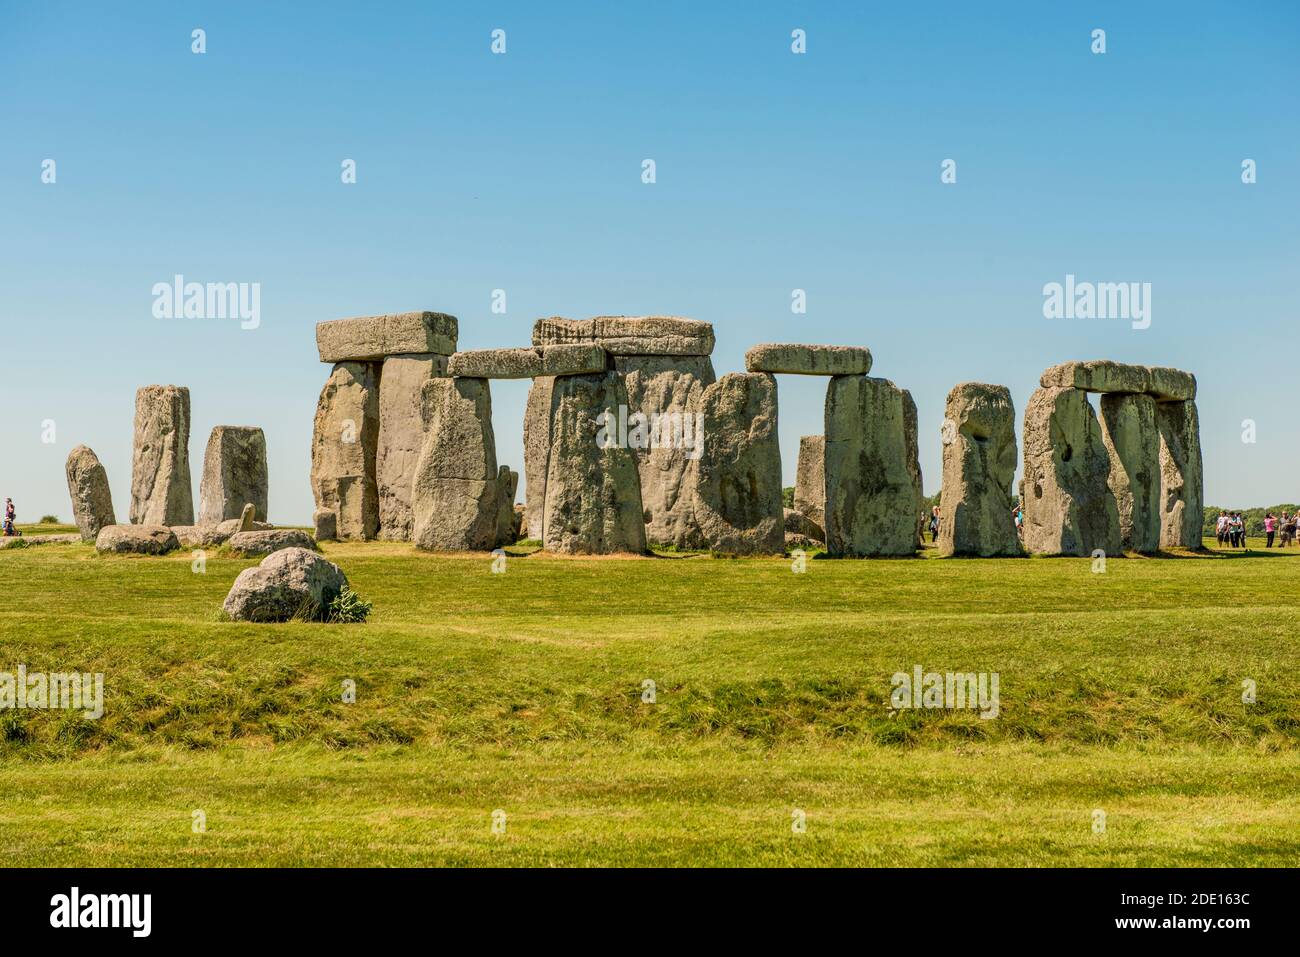 Stonehenge Neolithic monument, UNESCO World Heritage Site, Salisbury Plain, Salisbury, Wiltshire, England, United Kingdom, Europe Stock Photo